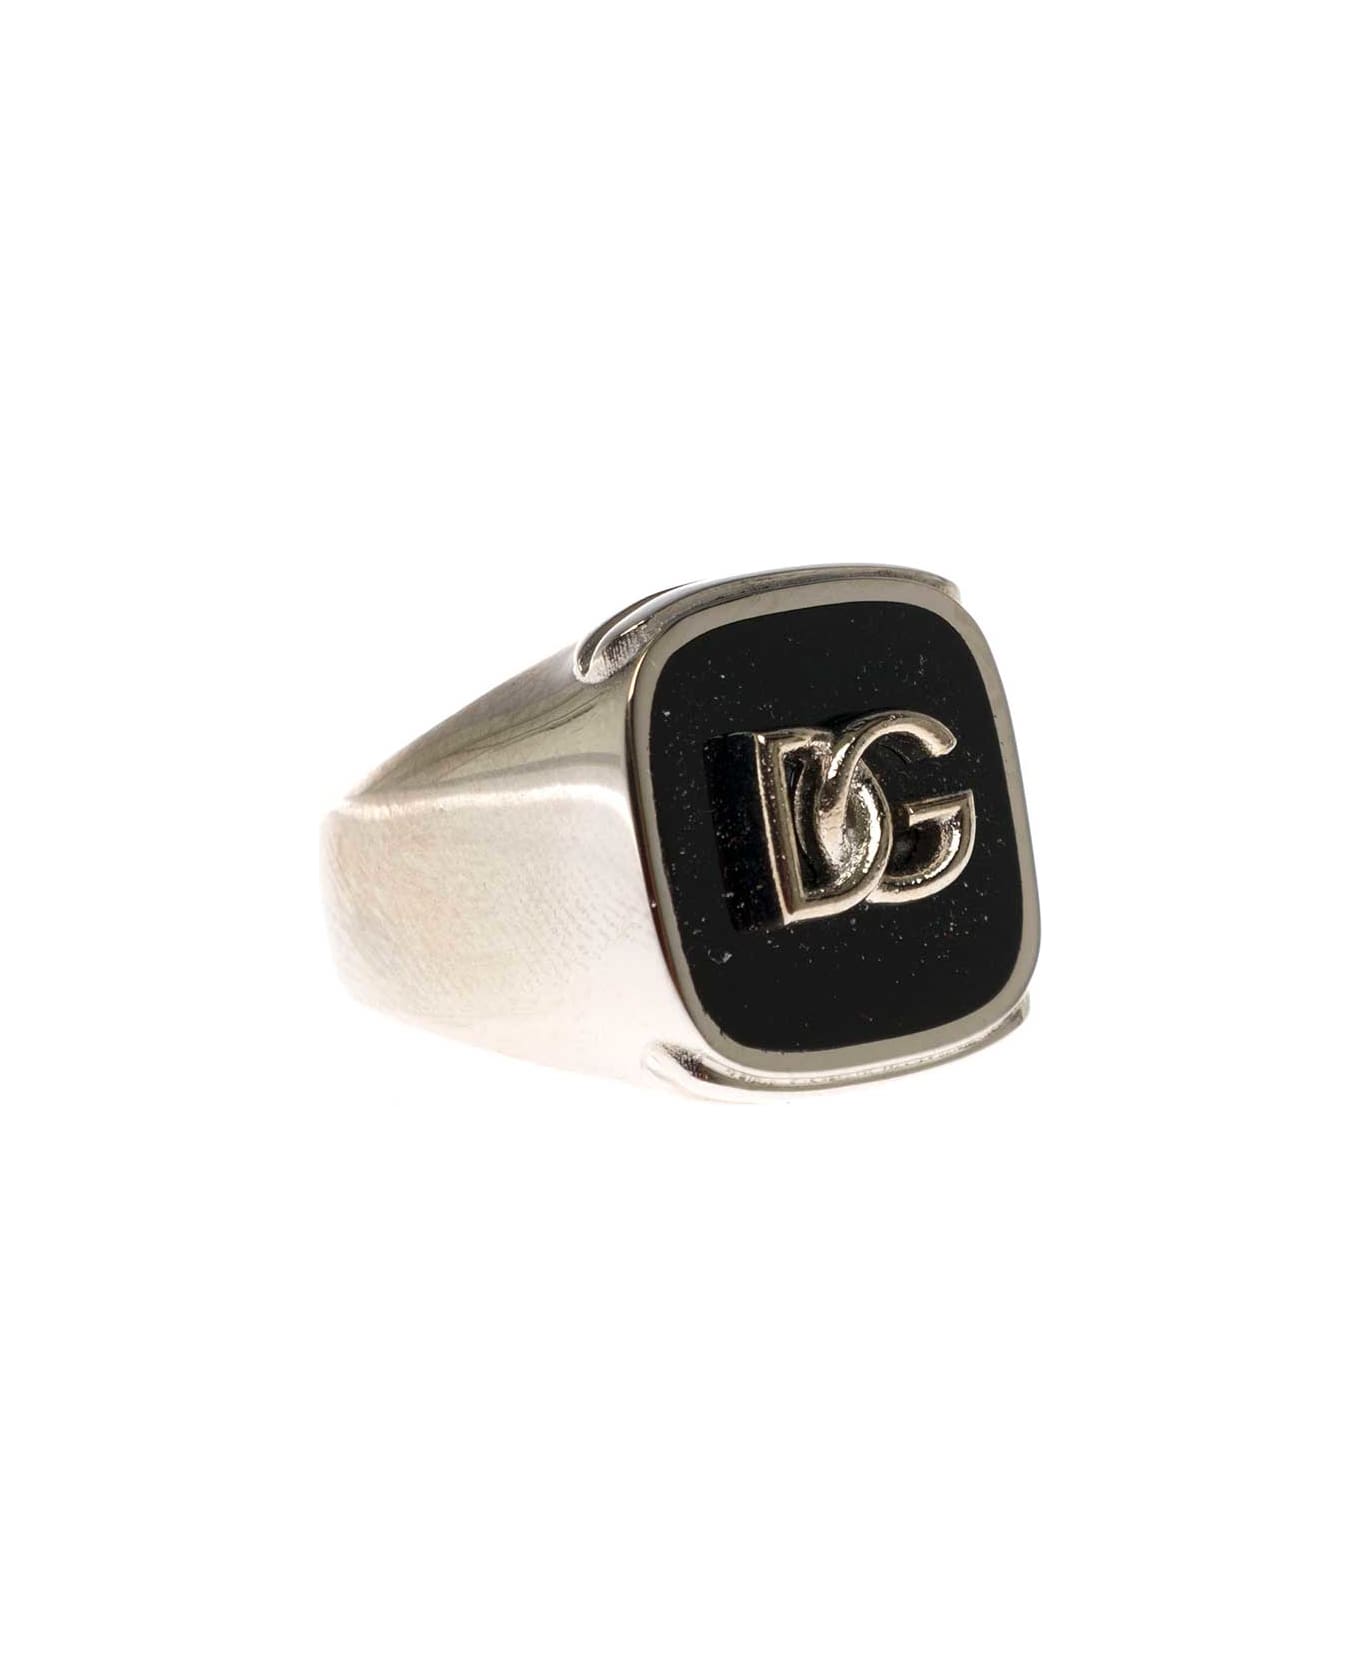 Dolce & Gabbana Man's Black Enameled Brass Ring With Logo - Metallic